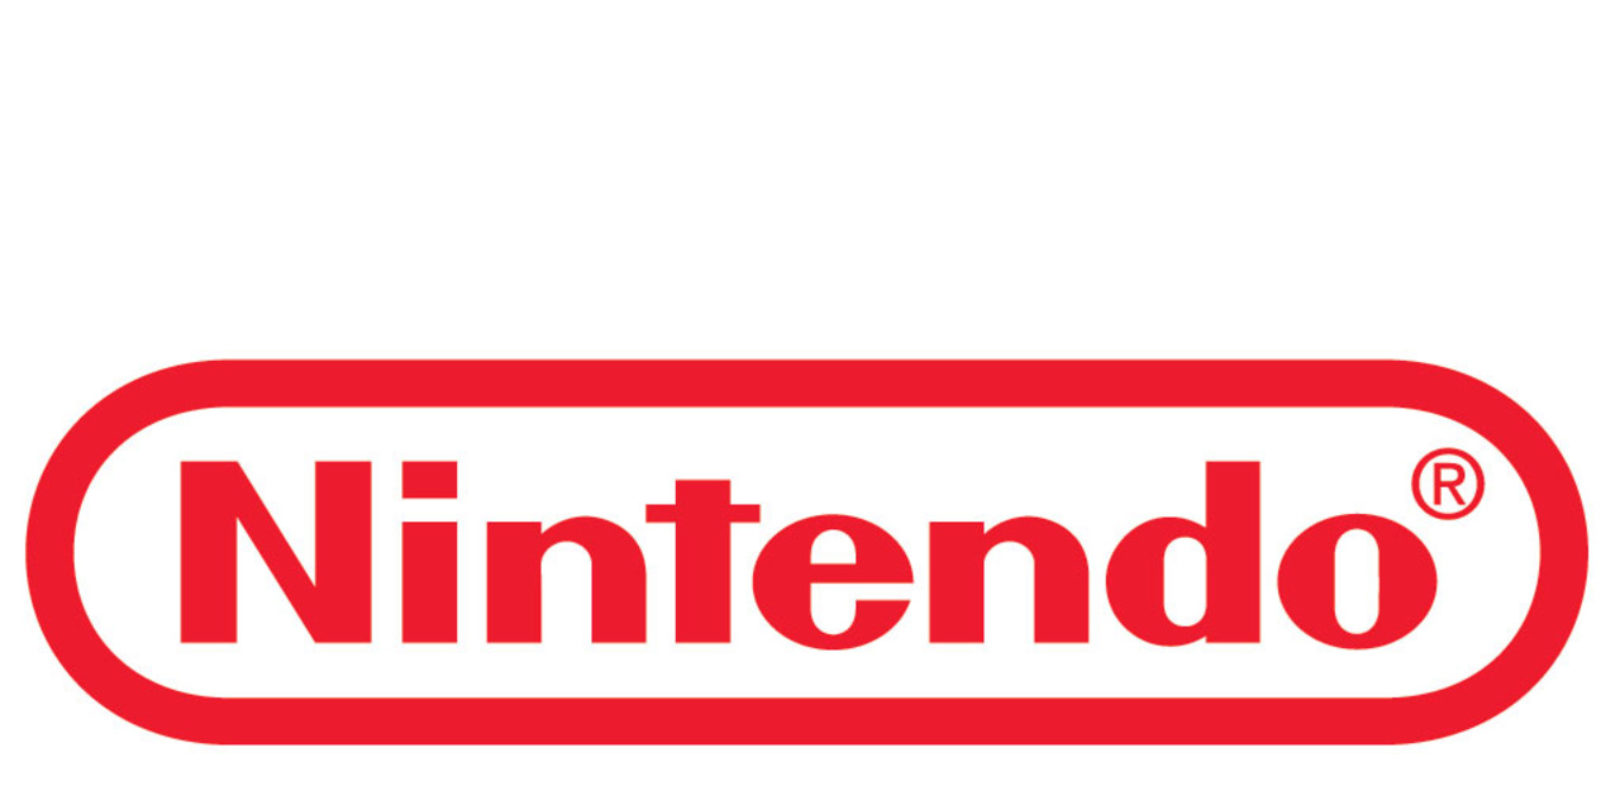 Nintendo direct leaks